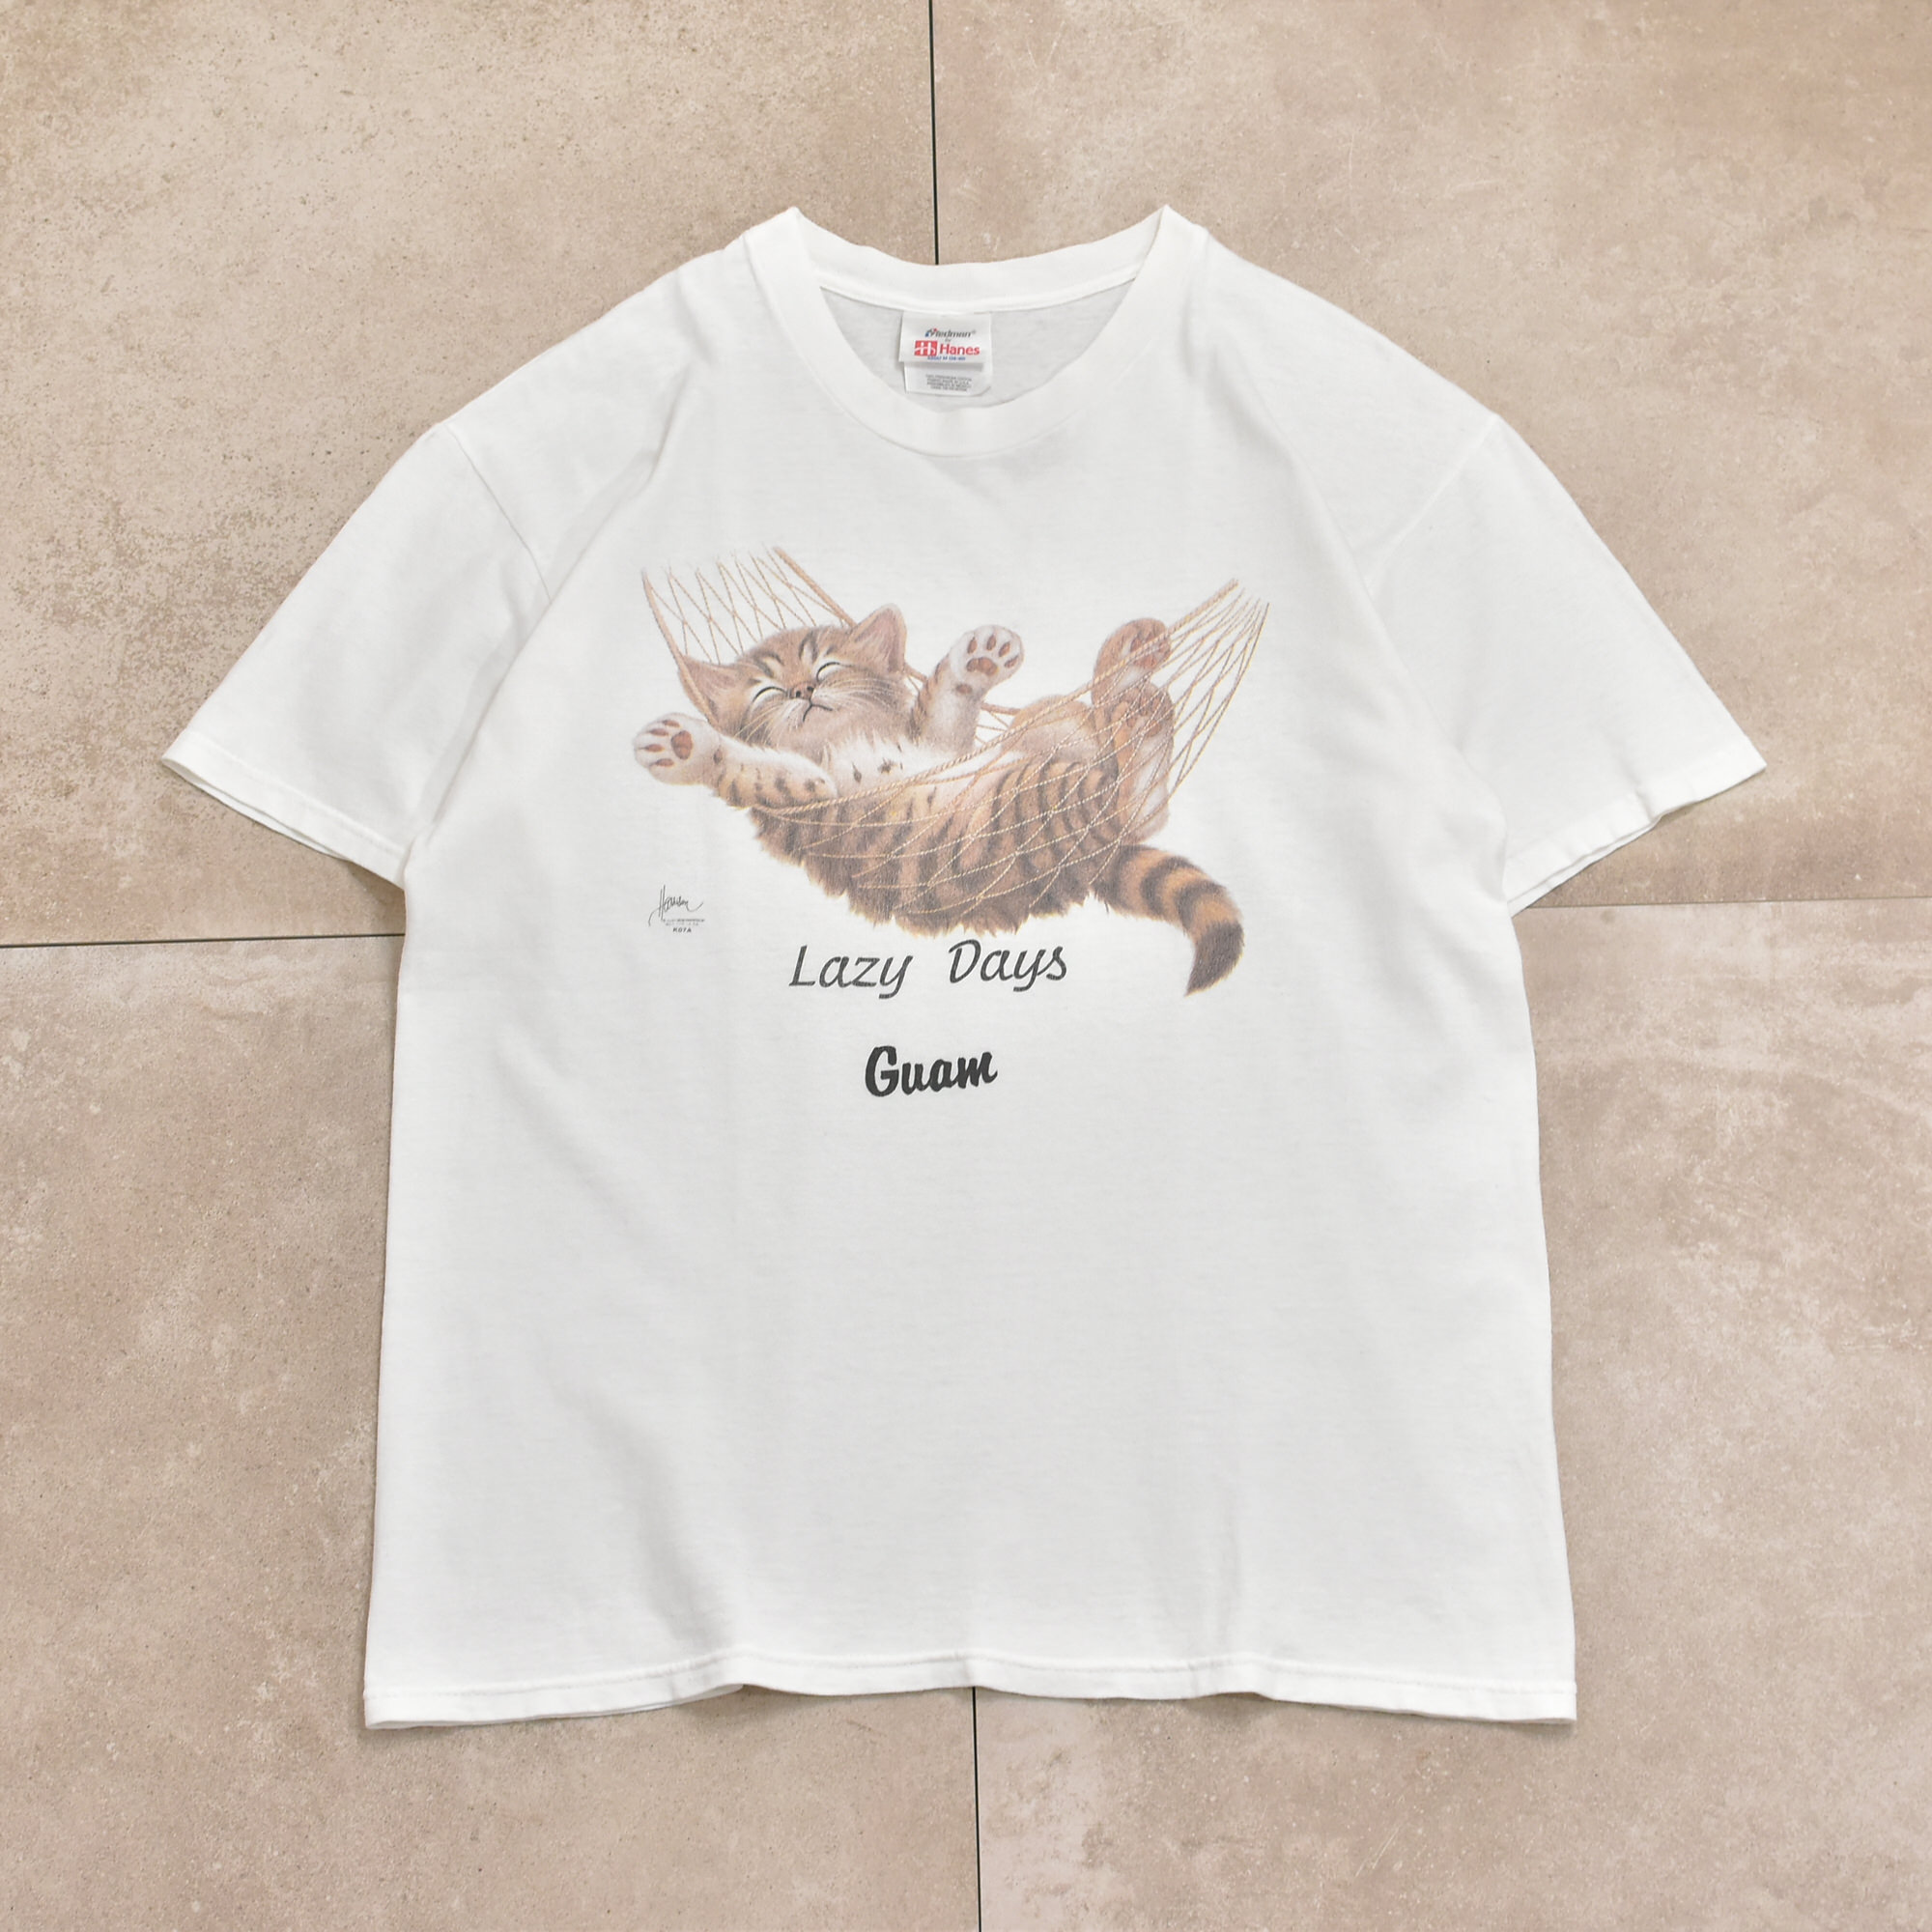 ボブハリソン　ヘインズ　猫 Tシャツ　美品　s m 150 160